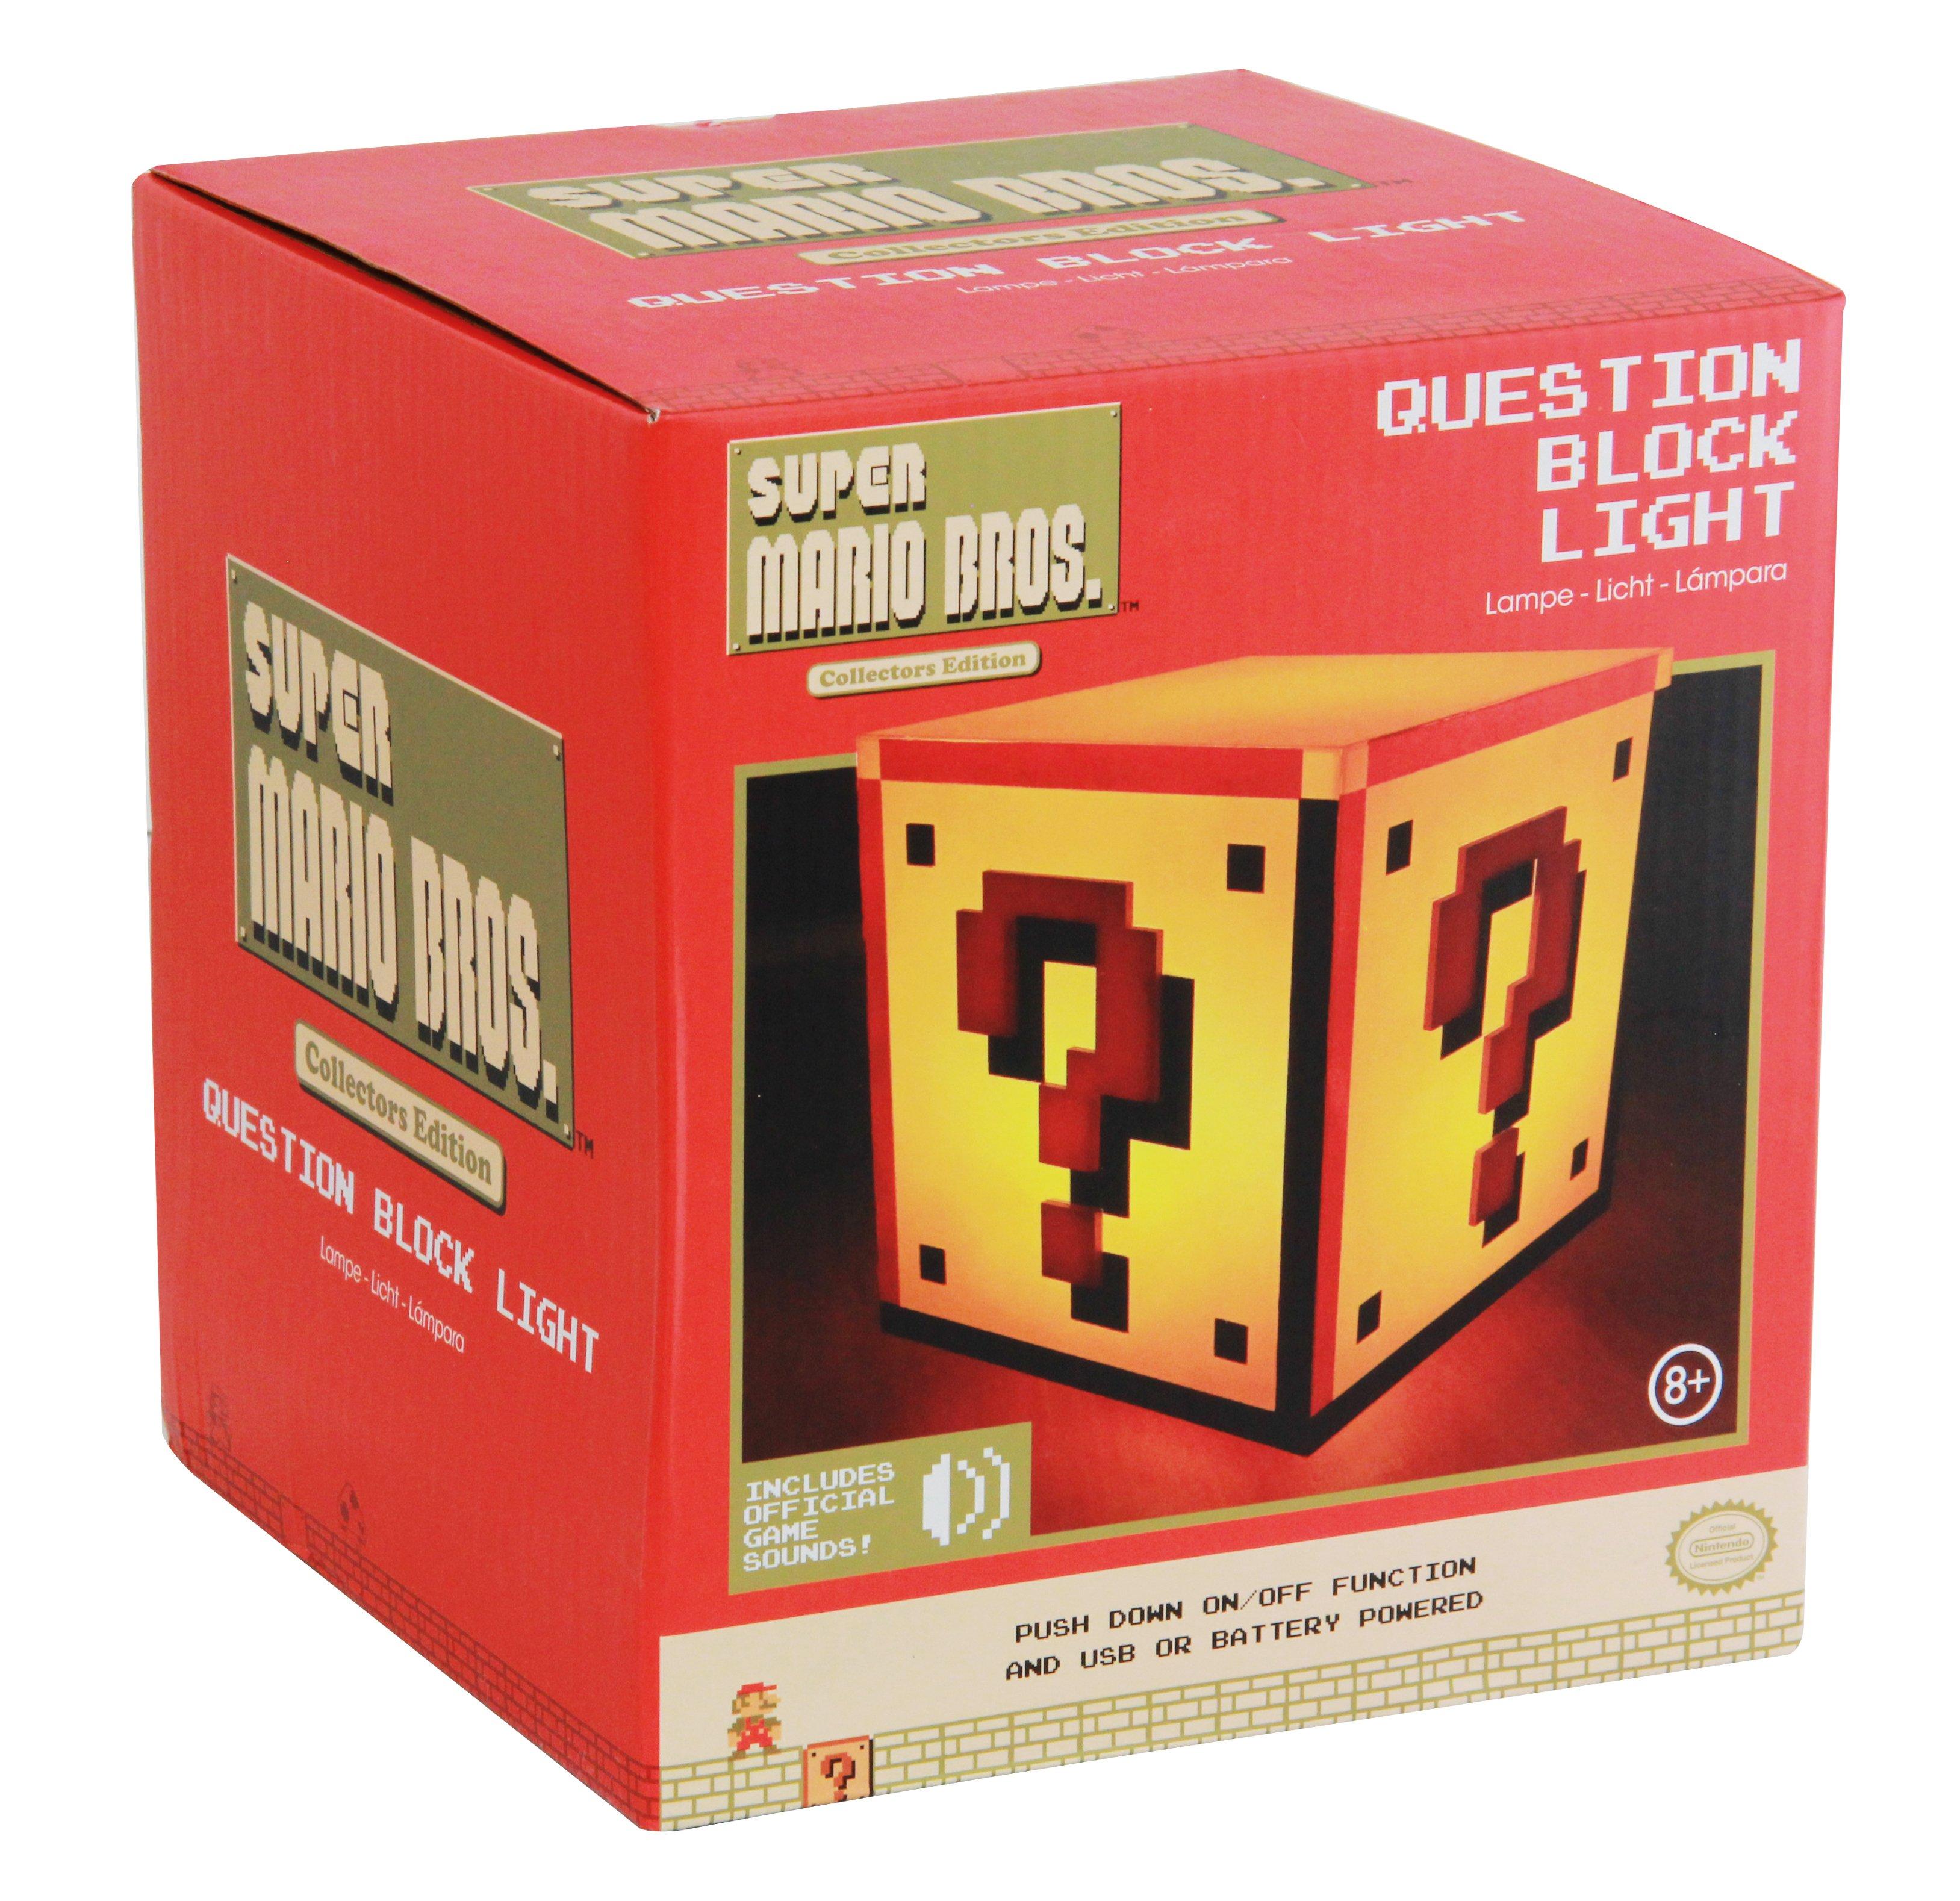 Geeknet Super Mario Bros. Question Block Lamp GameStop Exclusive